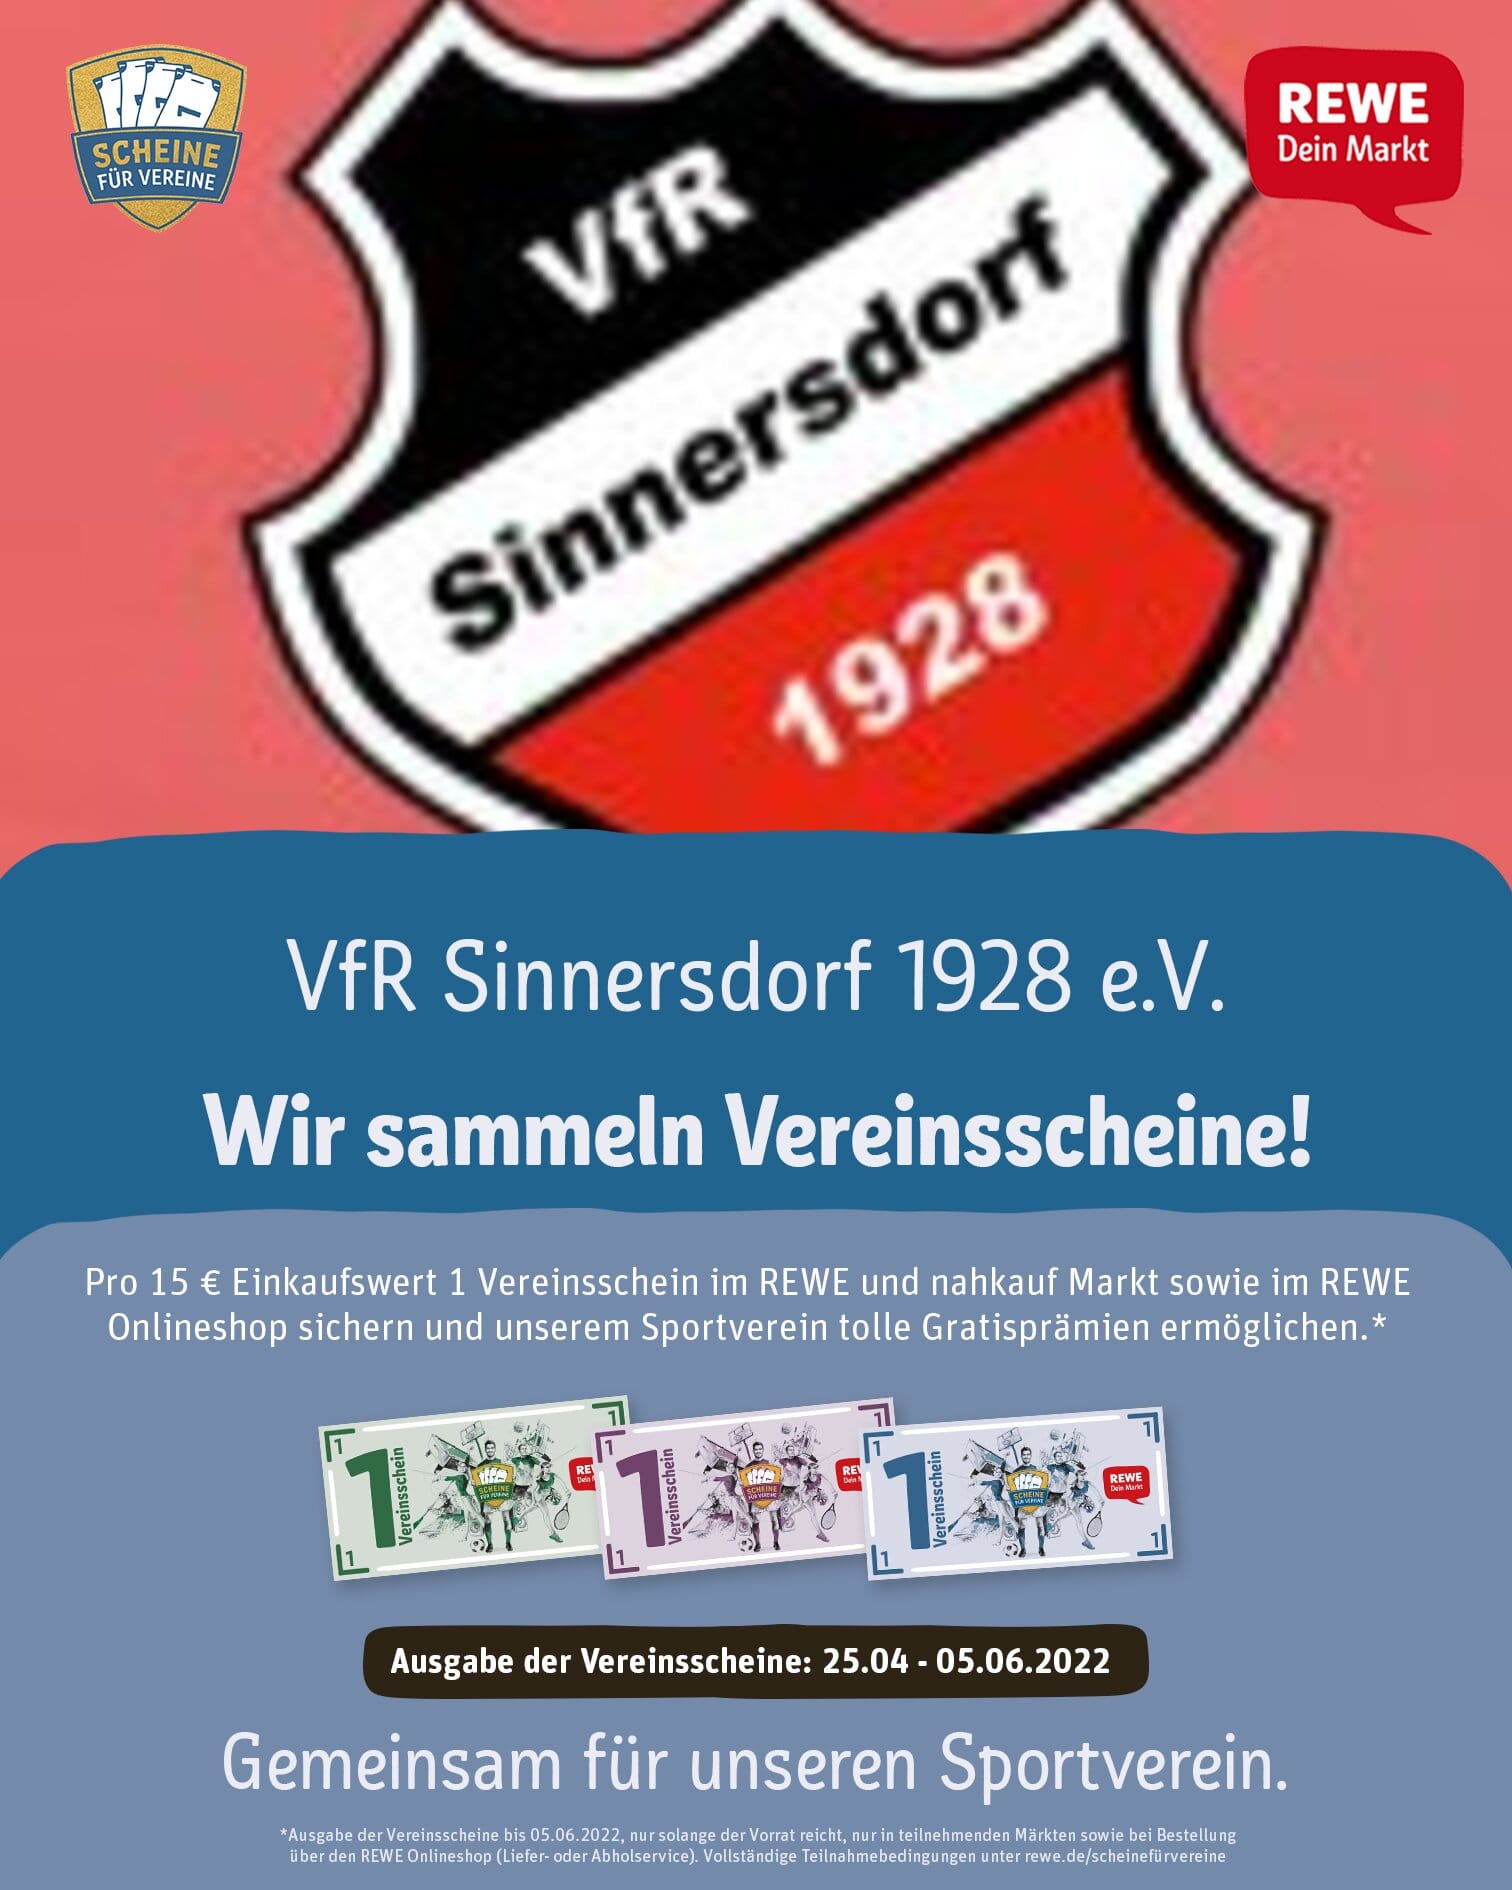 Plakat mit dem VfR Logo und einem Werbetext für die REWE Aktion Scheine für Vereine